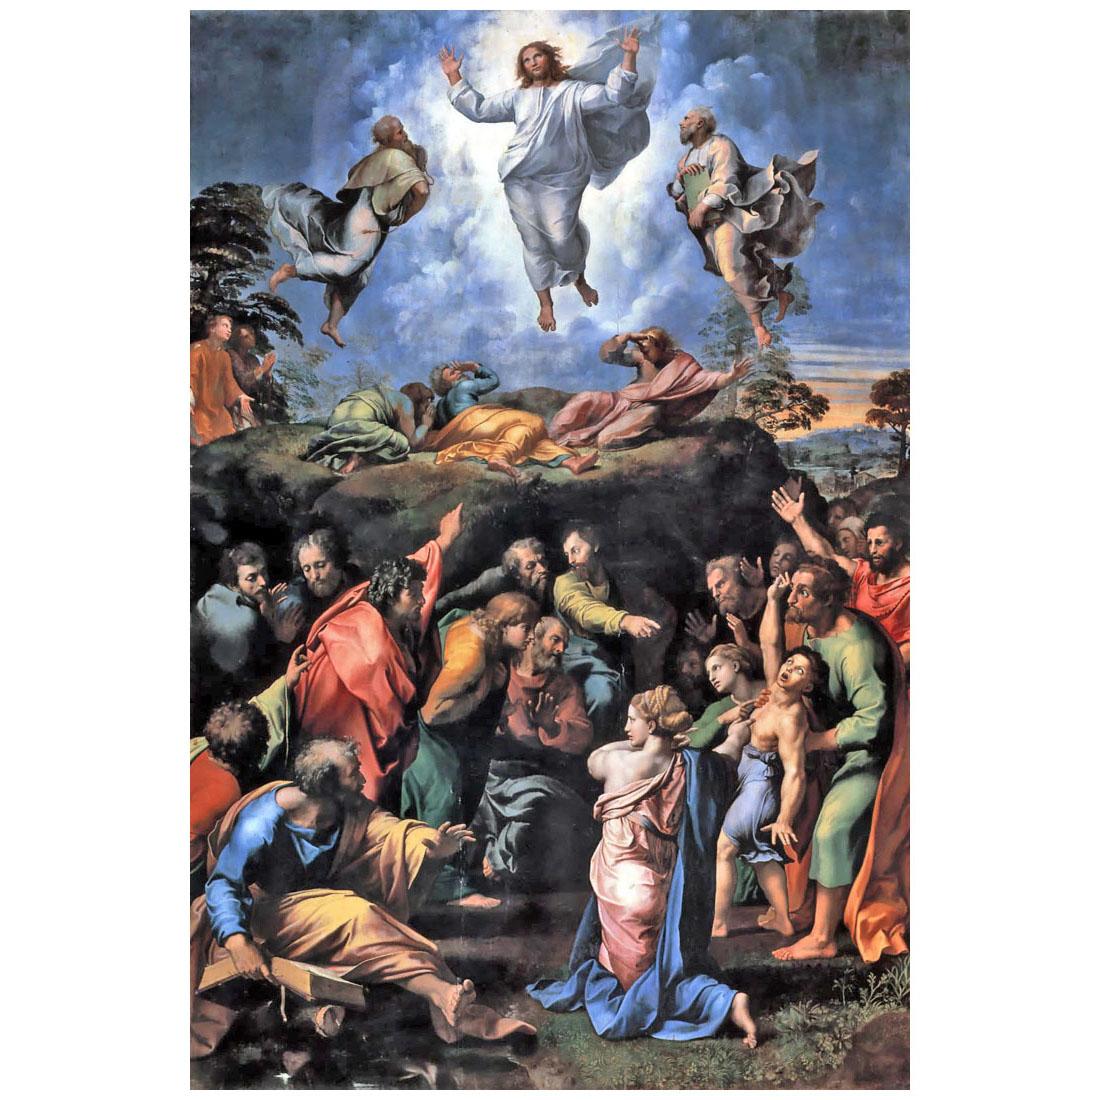 Raffaello Sanzio. Transfigurazione. 1520.  Pinacoteca Vaticana